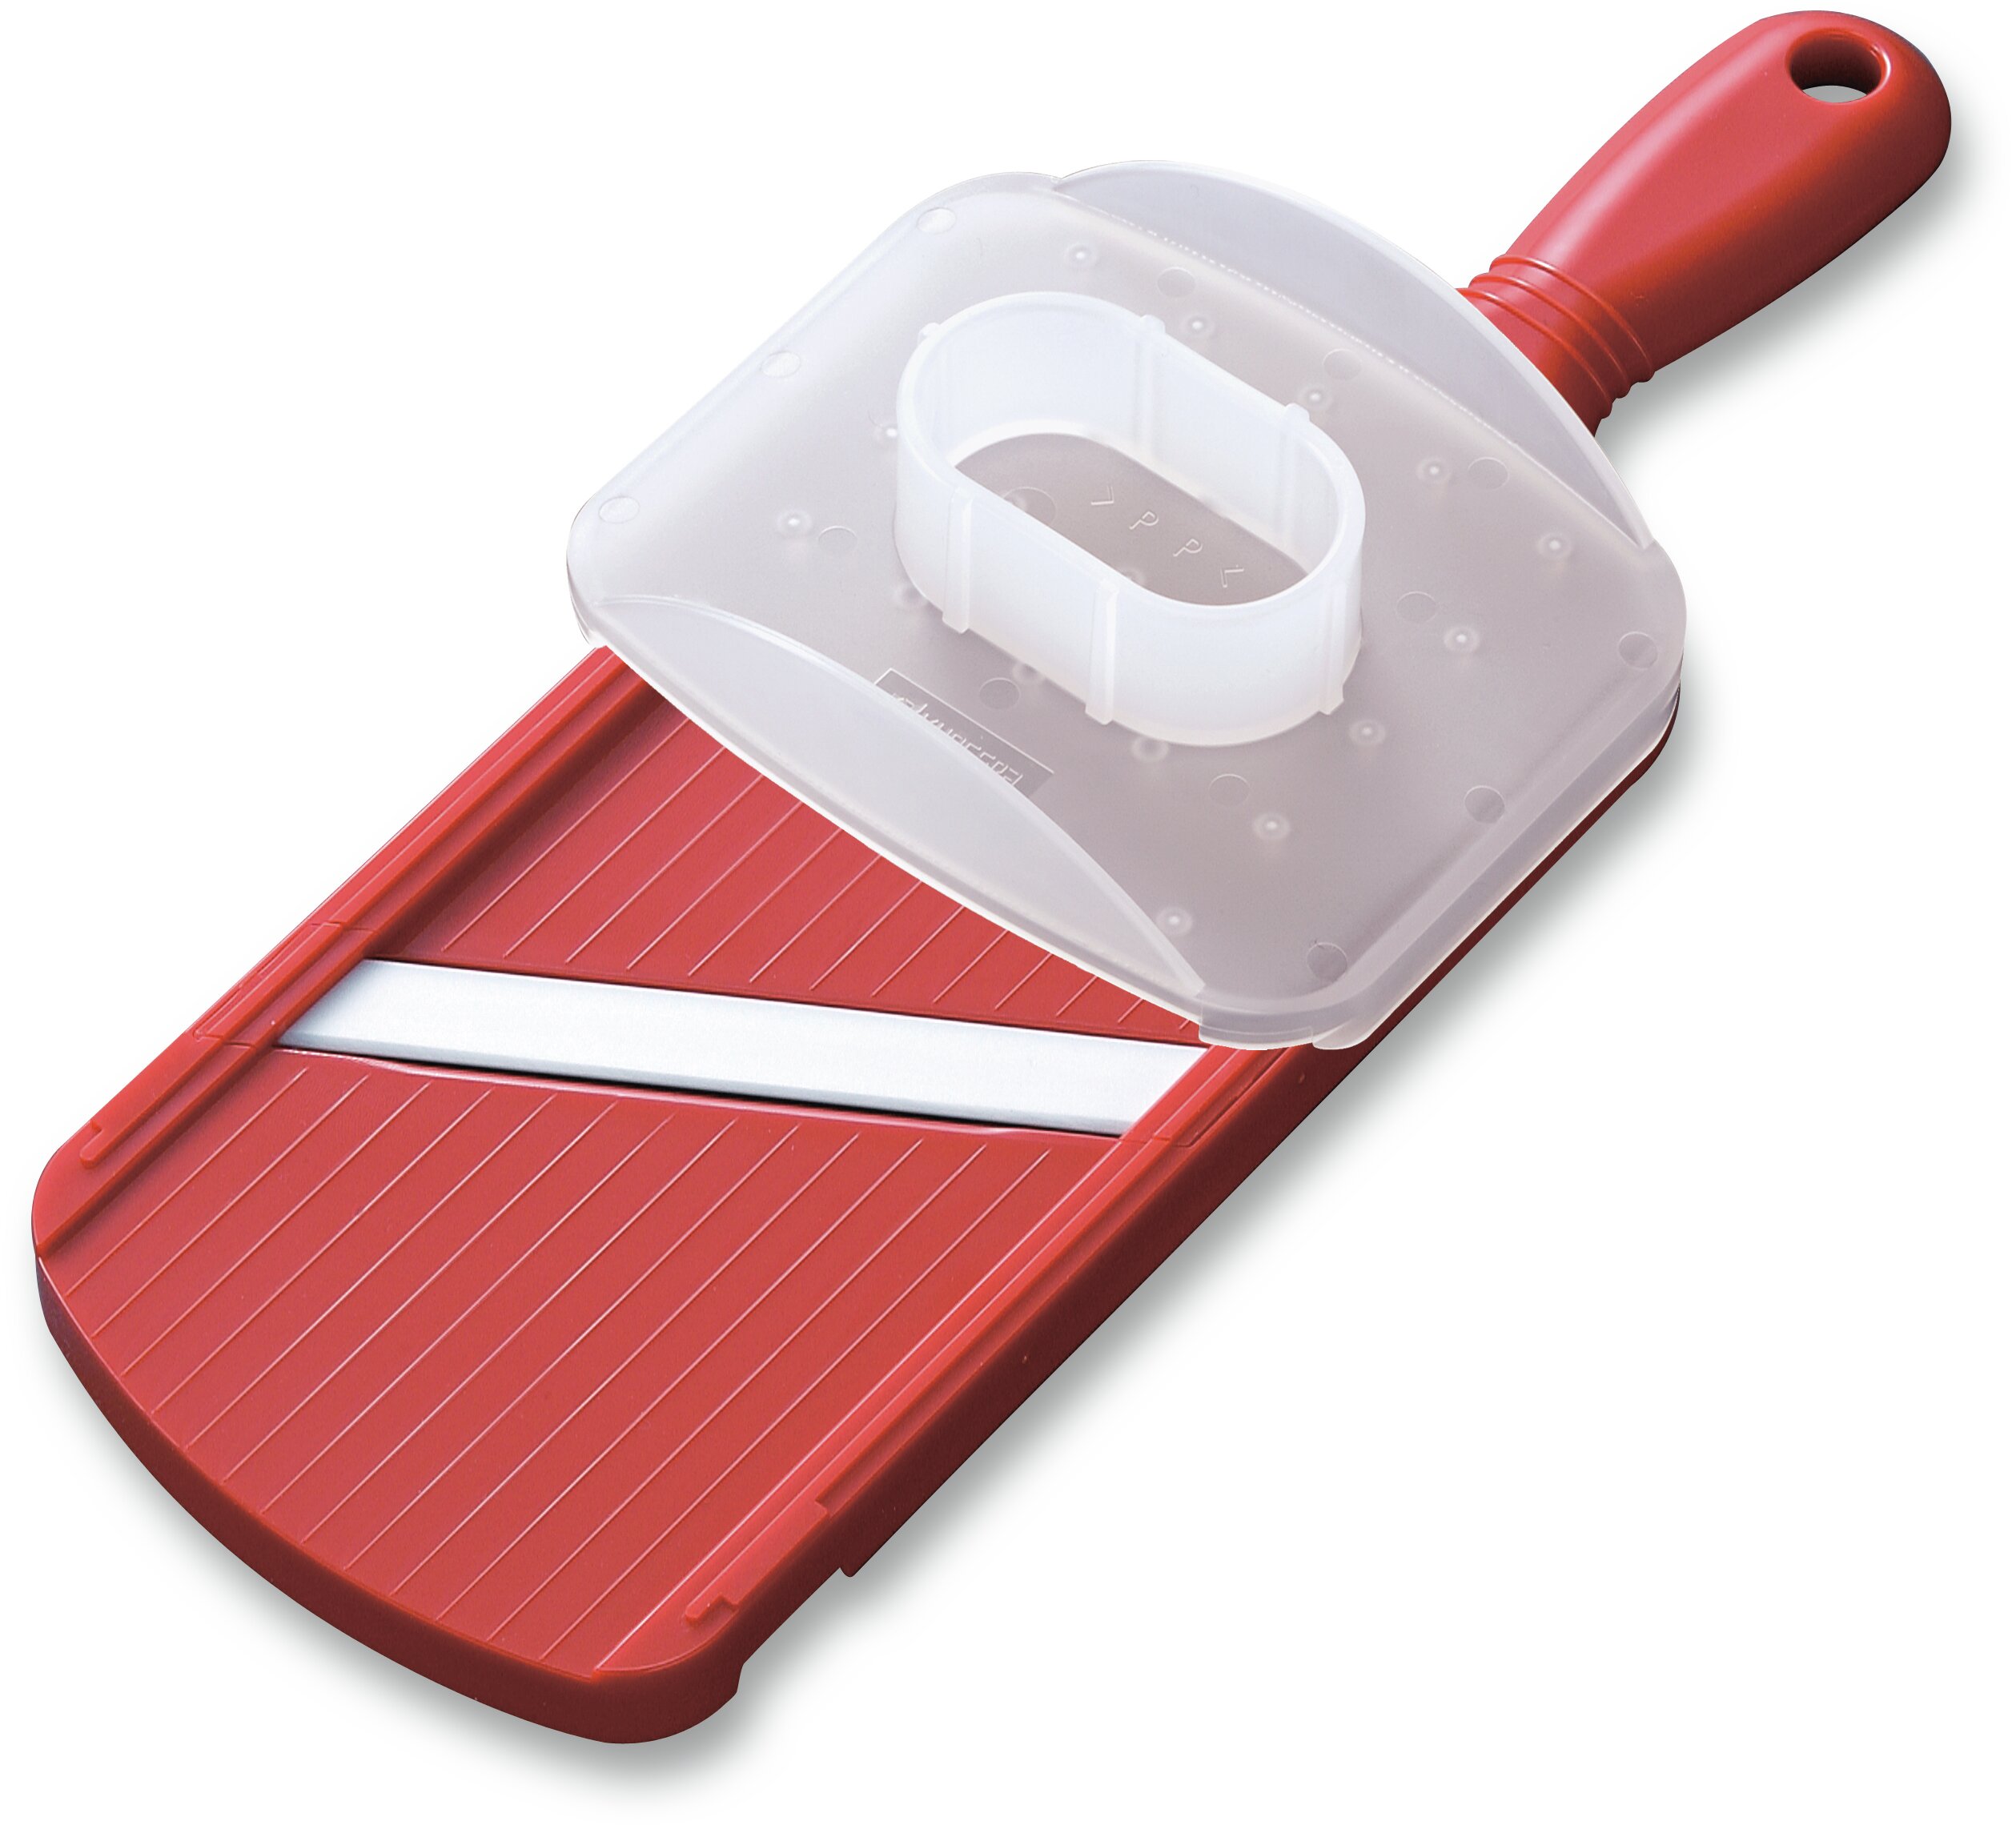 Kyocera Advanced Ceramic Adjustable Mandoline Slicer Red for sale